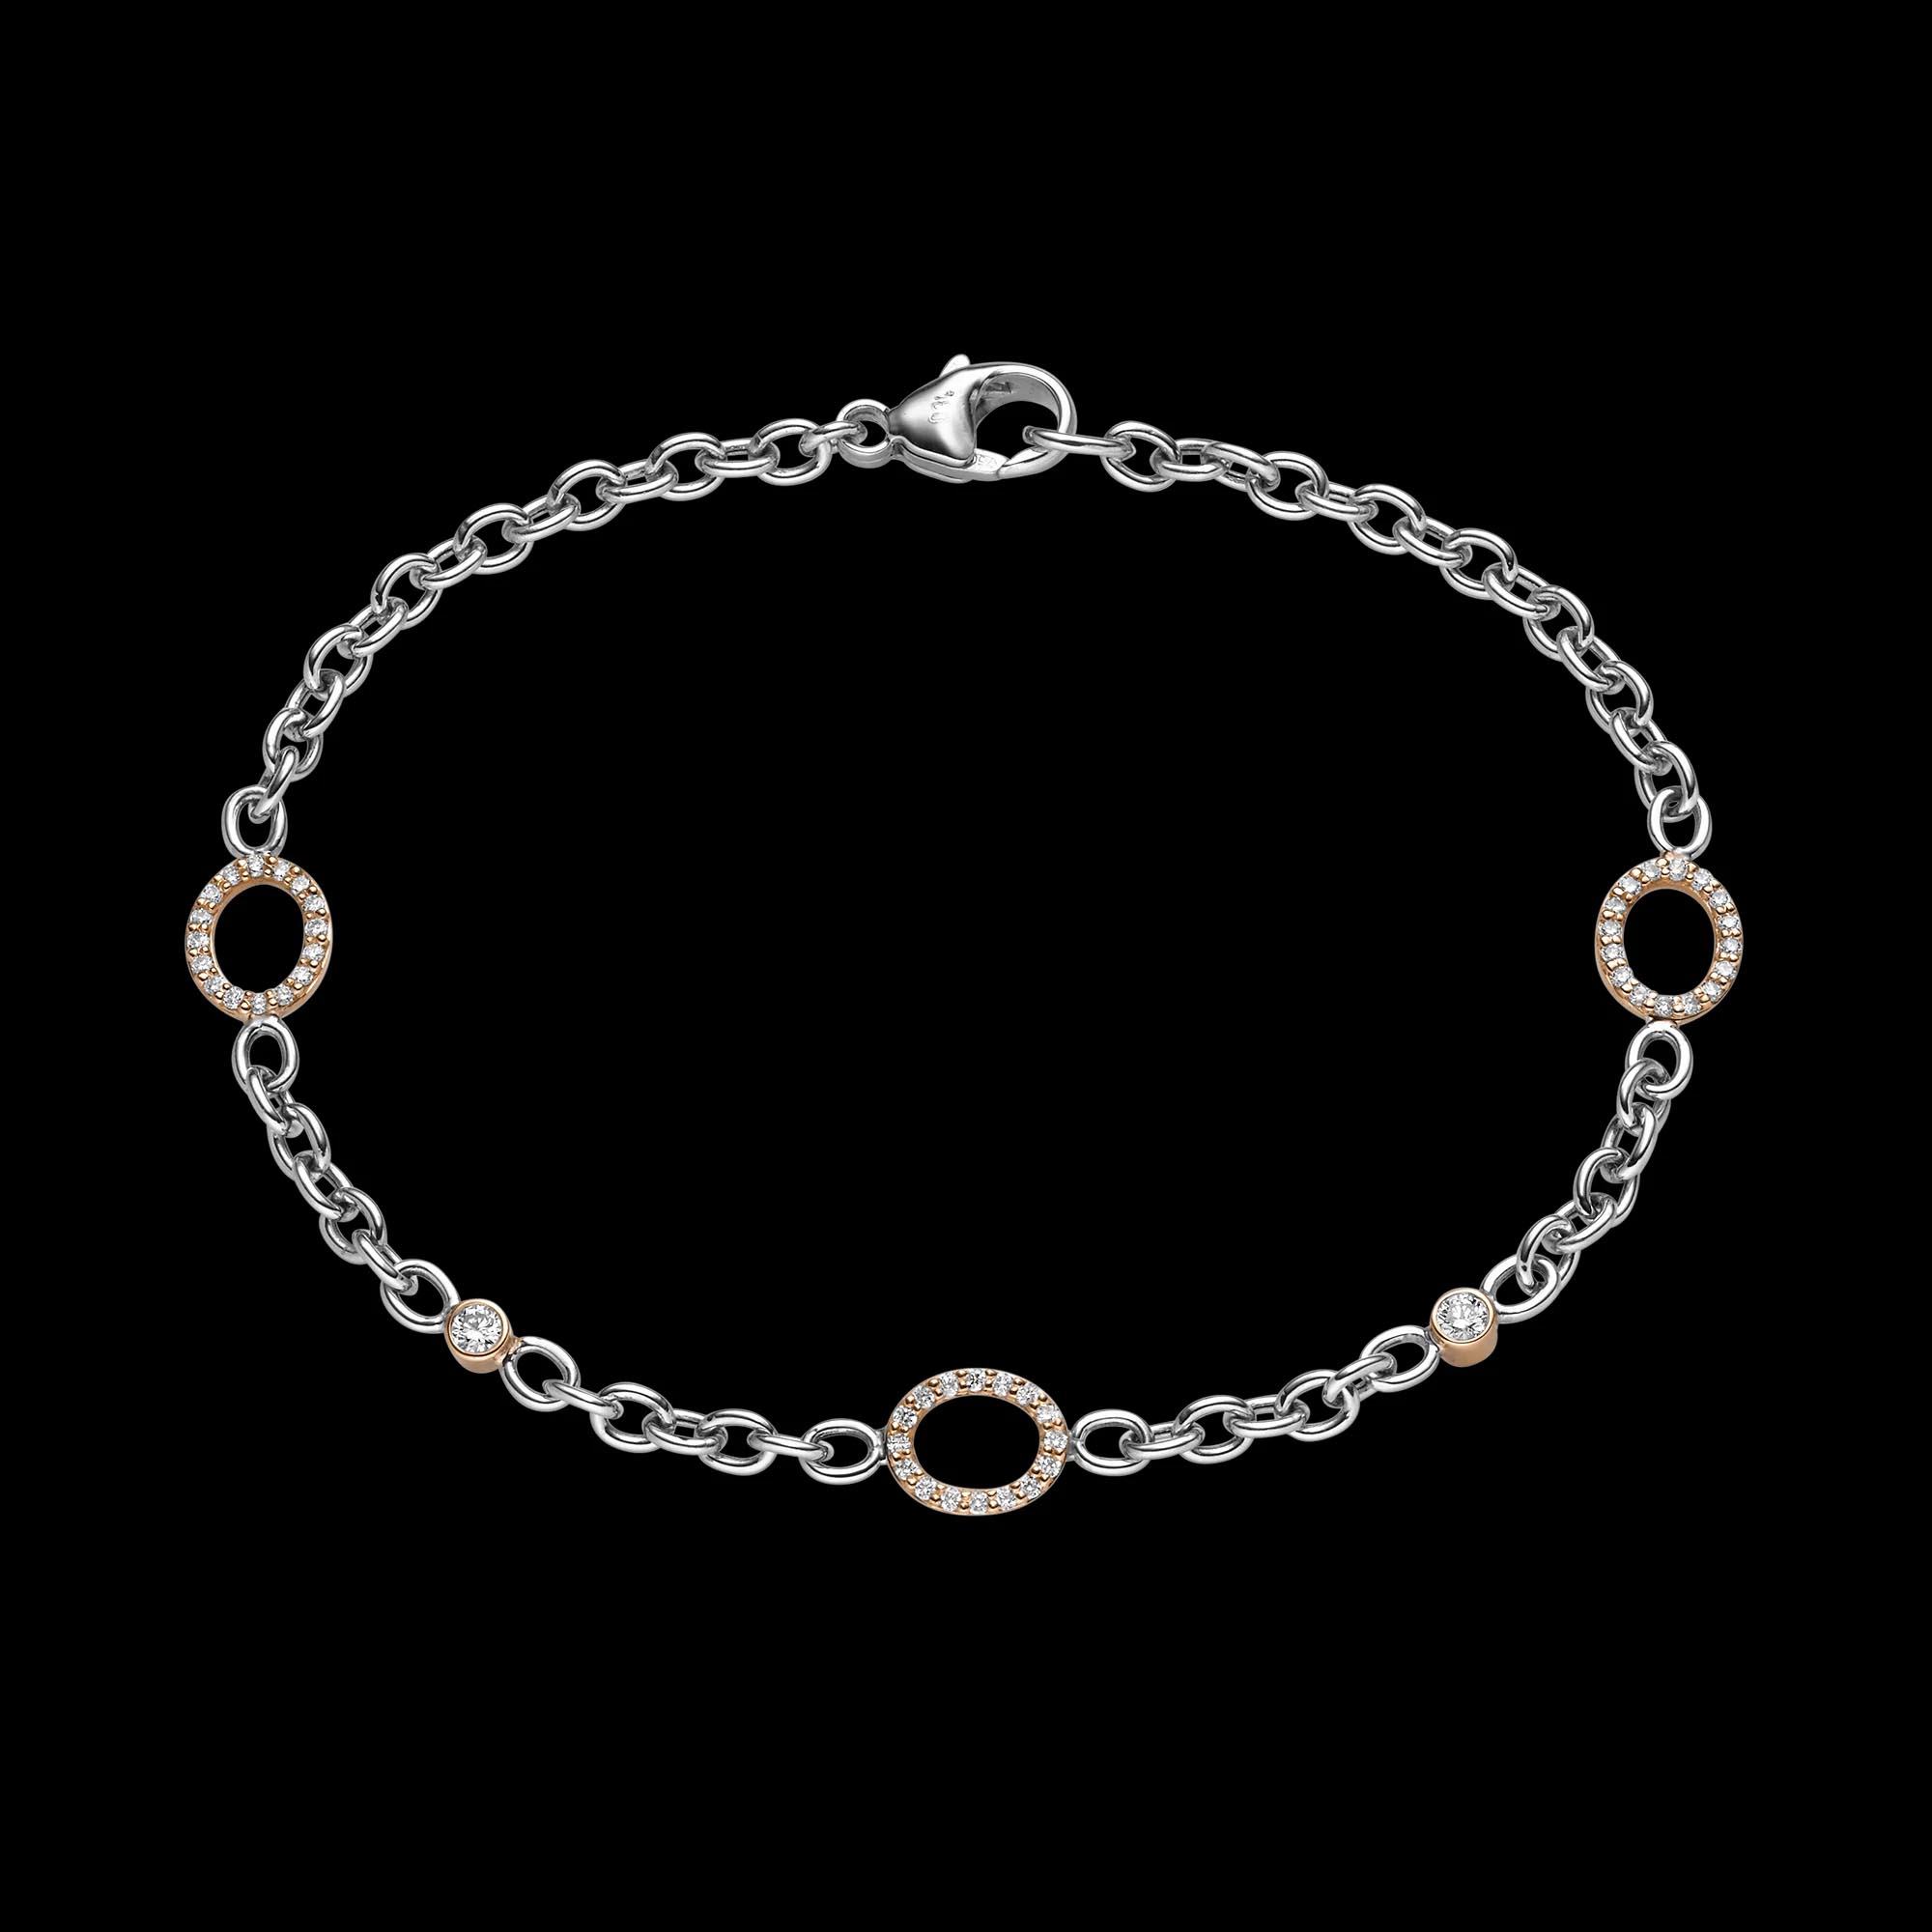 Wholesale The best Cubic Zirconia Fashion Charms & Charm Bracelets OEM/ODM Jewelry customized jewelry wholesale